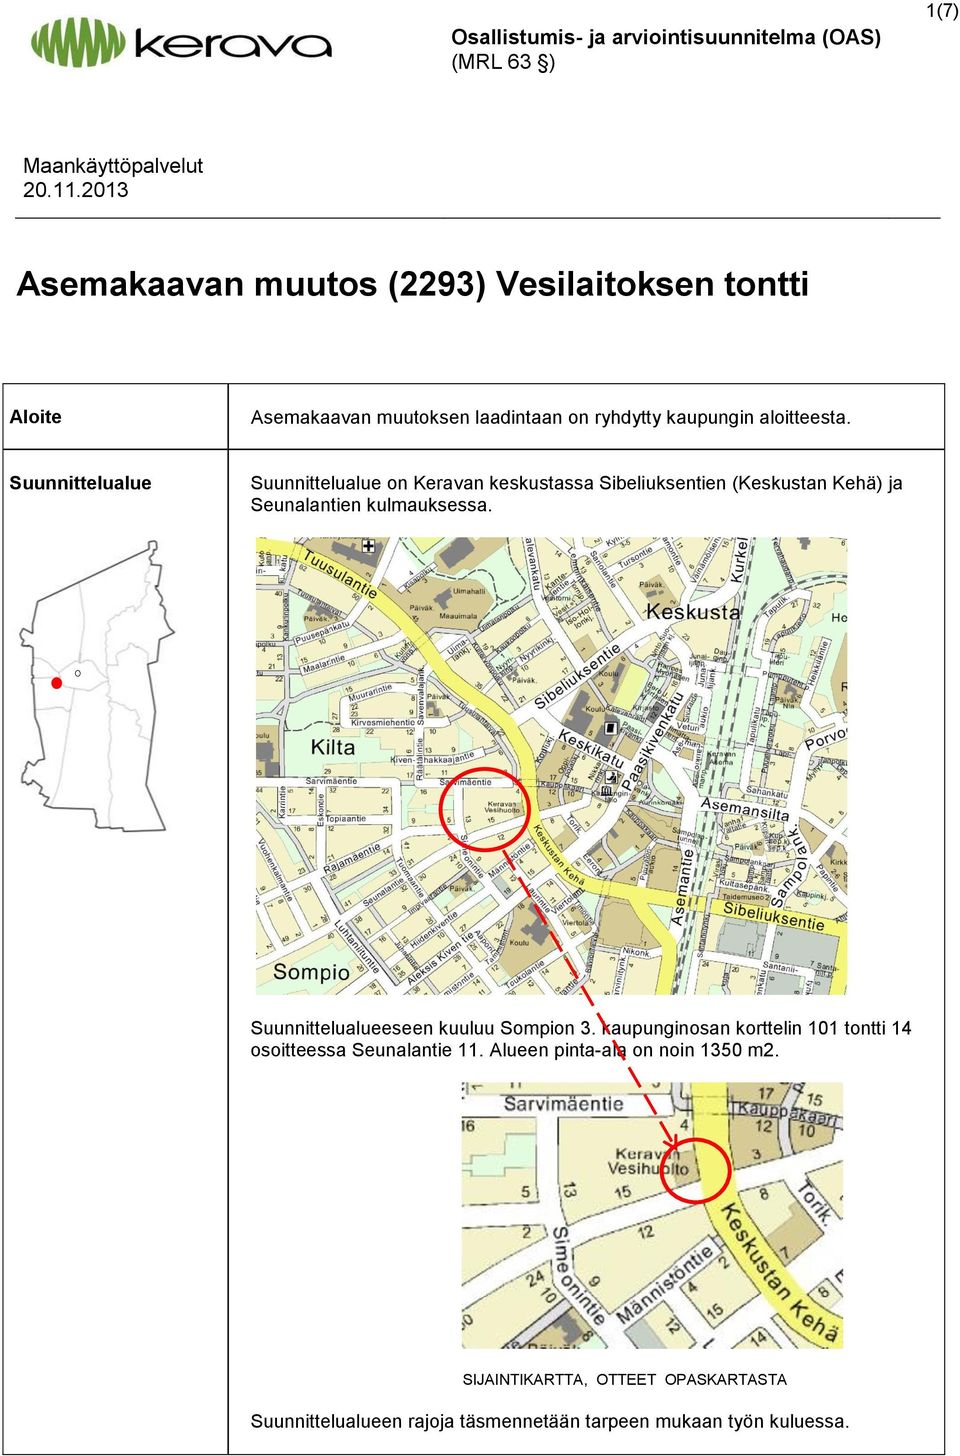 Suunnittelualue Suunnittelualue on Keravan keskustassa Sibeliuksentien (Keskustan Kehä) ja Seunalantien kulmauksessa.